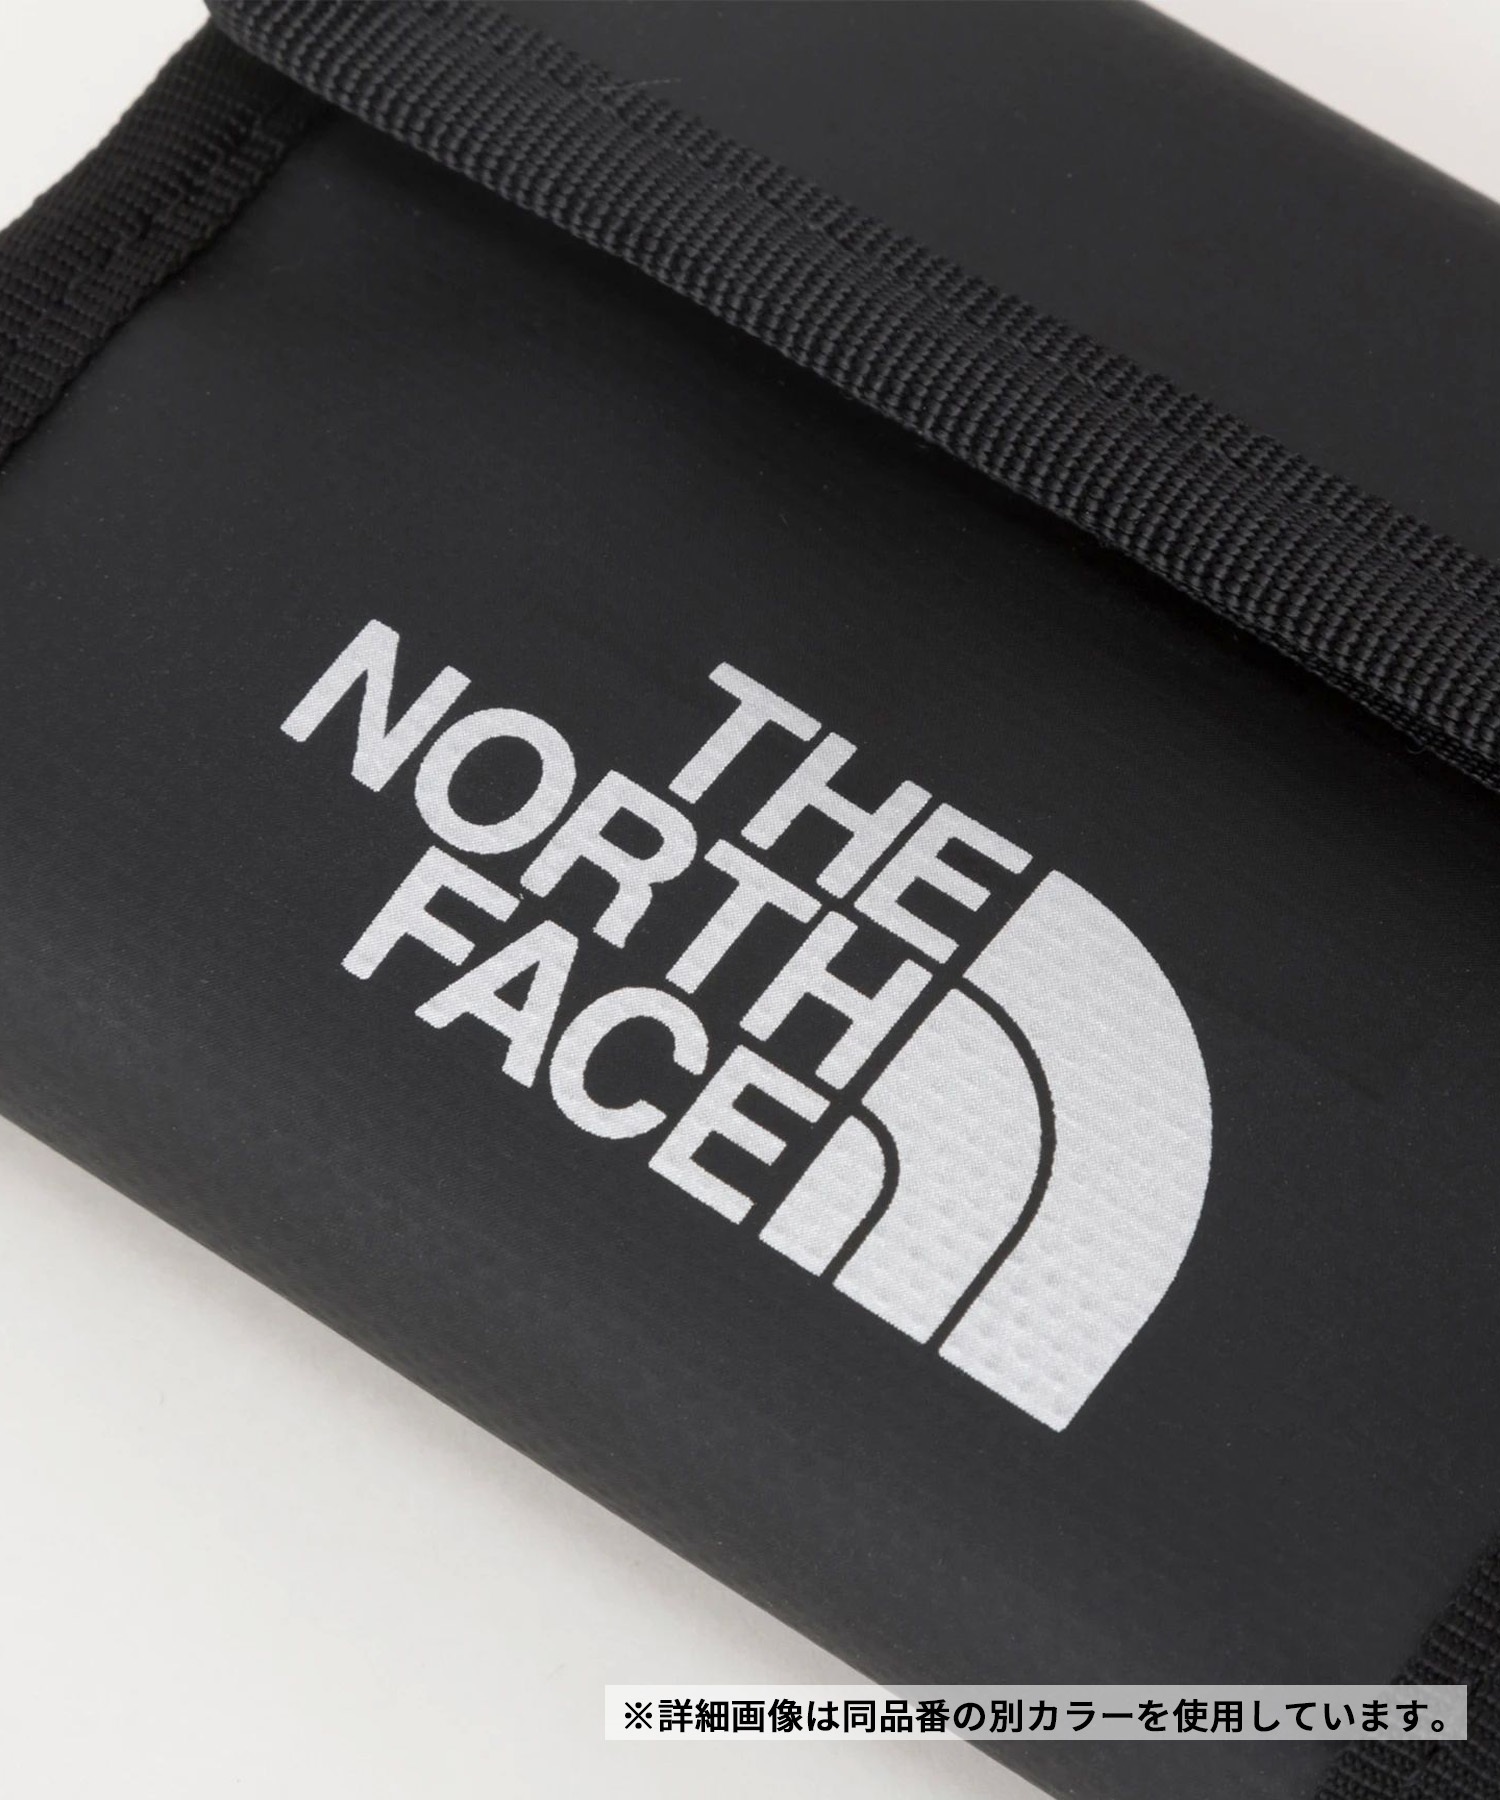 THE NORTH FACE/ザ・ノース・フェイス BC Wallet Mini BCワレットミニ 財布 ウォレット 二つ折り 折りたたみ NM82320 AY(AY-ONESIZE)